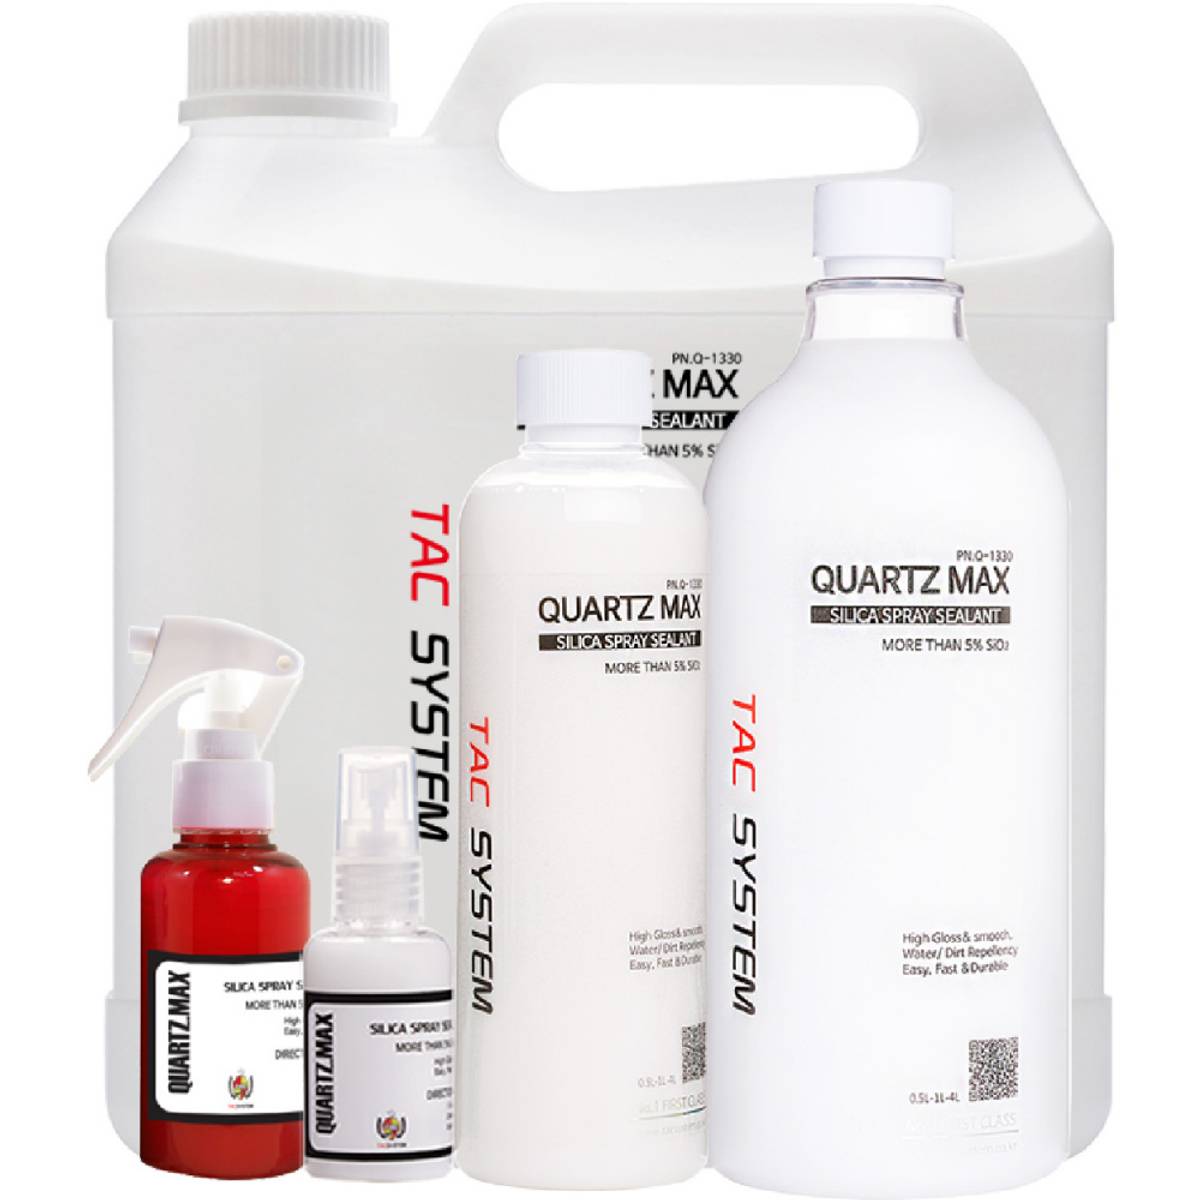 Tacsystem Quartz Max 100ml spray coating - Garasjekos.no